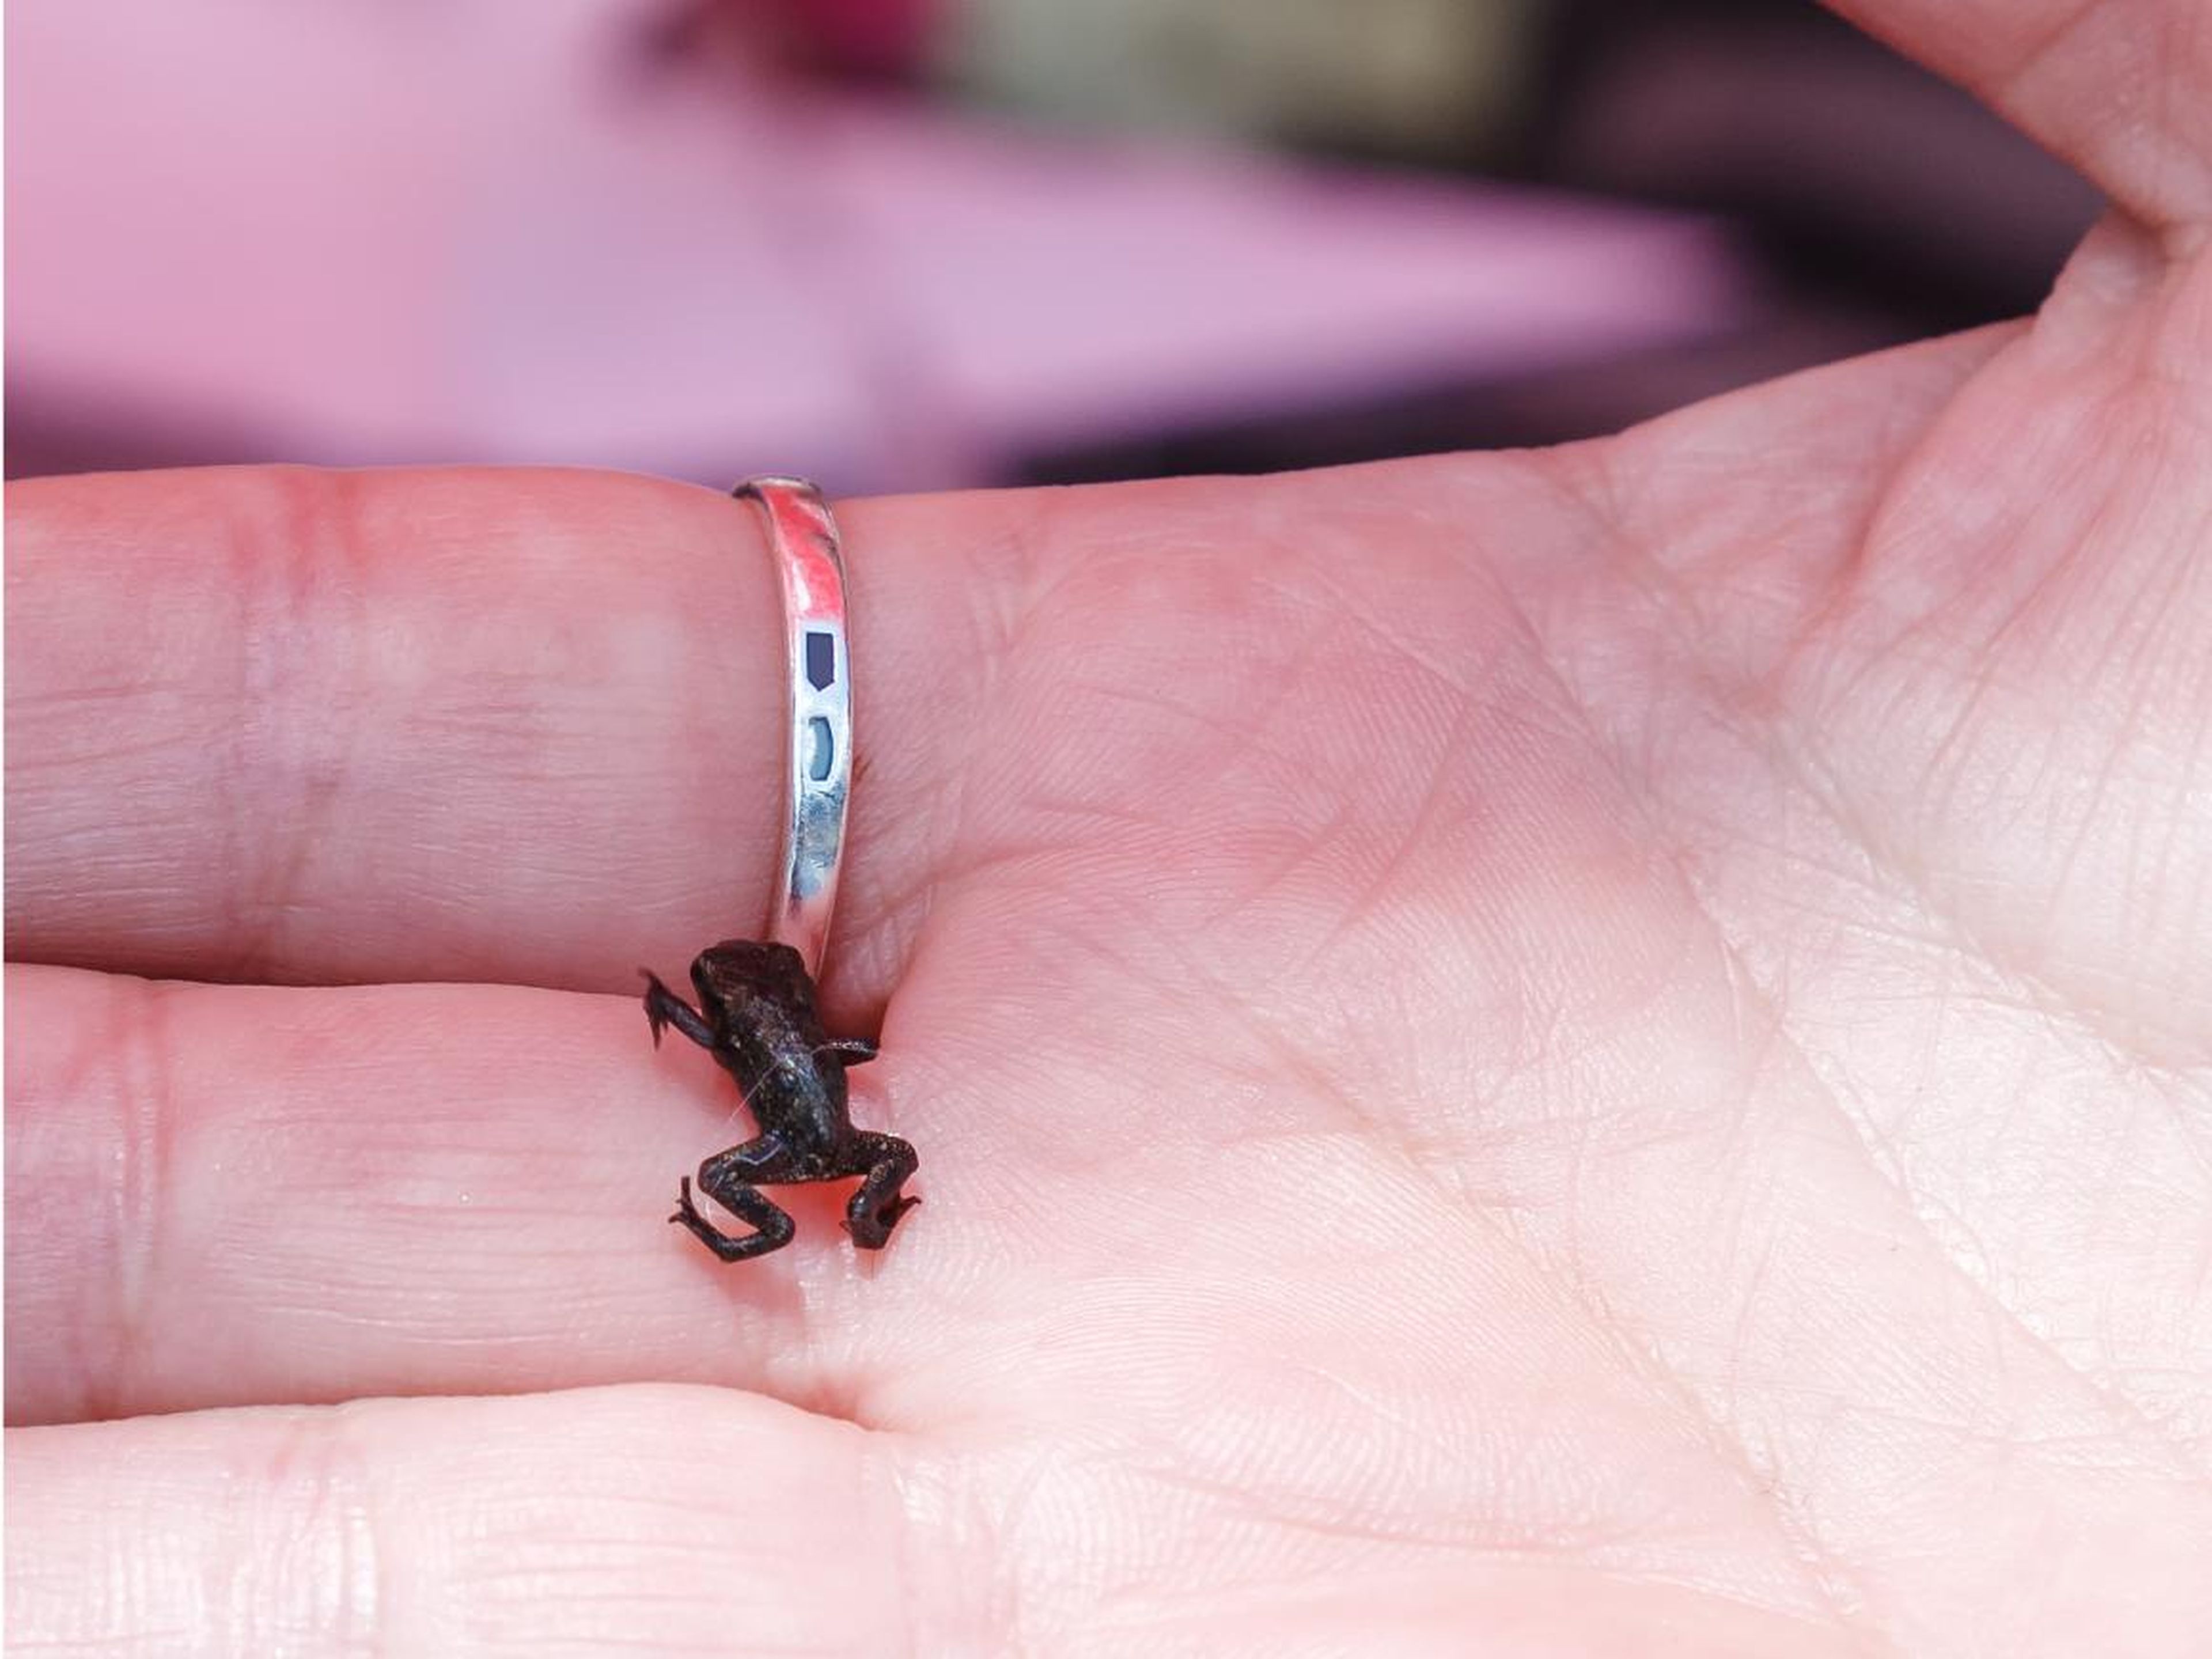 Paedophryne amauensis, la rana más pequeña del mundo, sobre una mano.